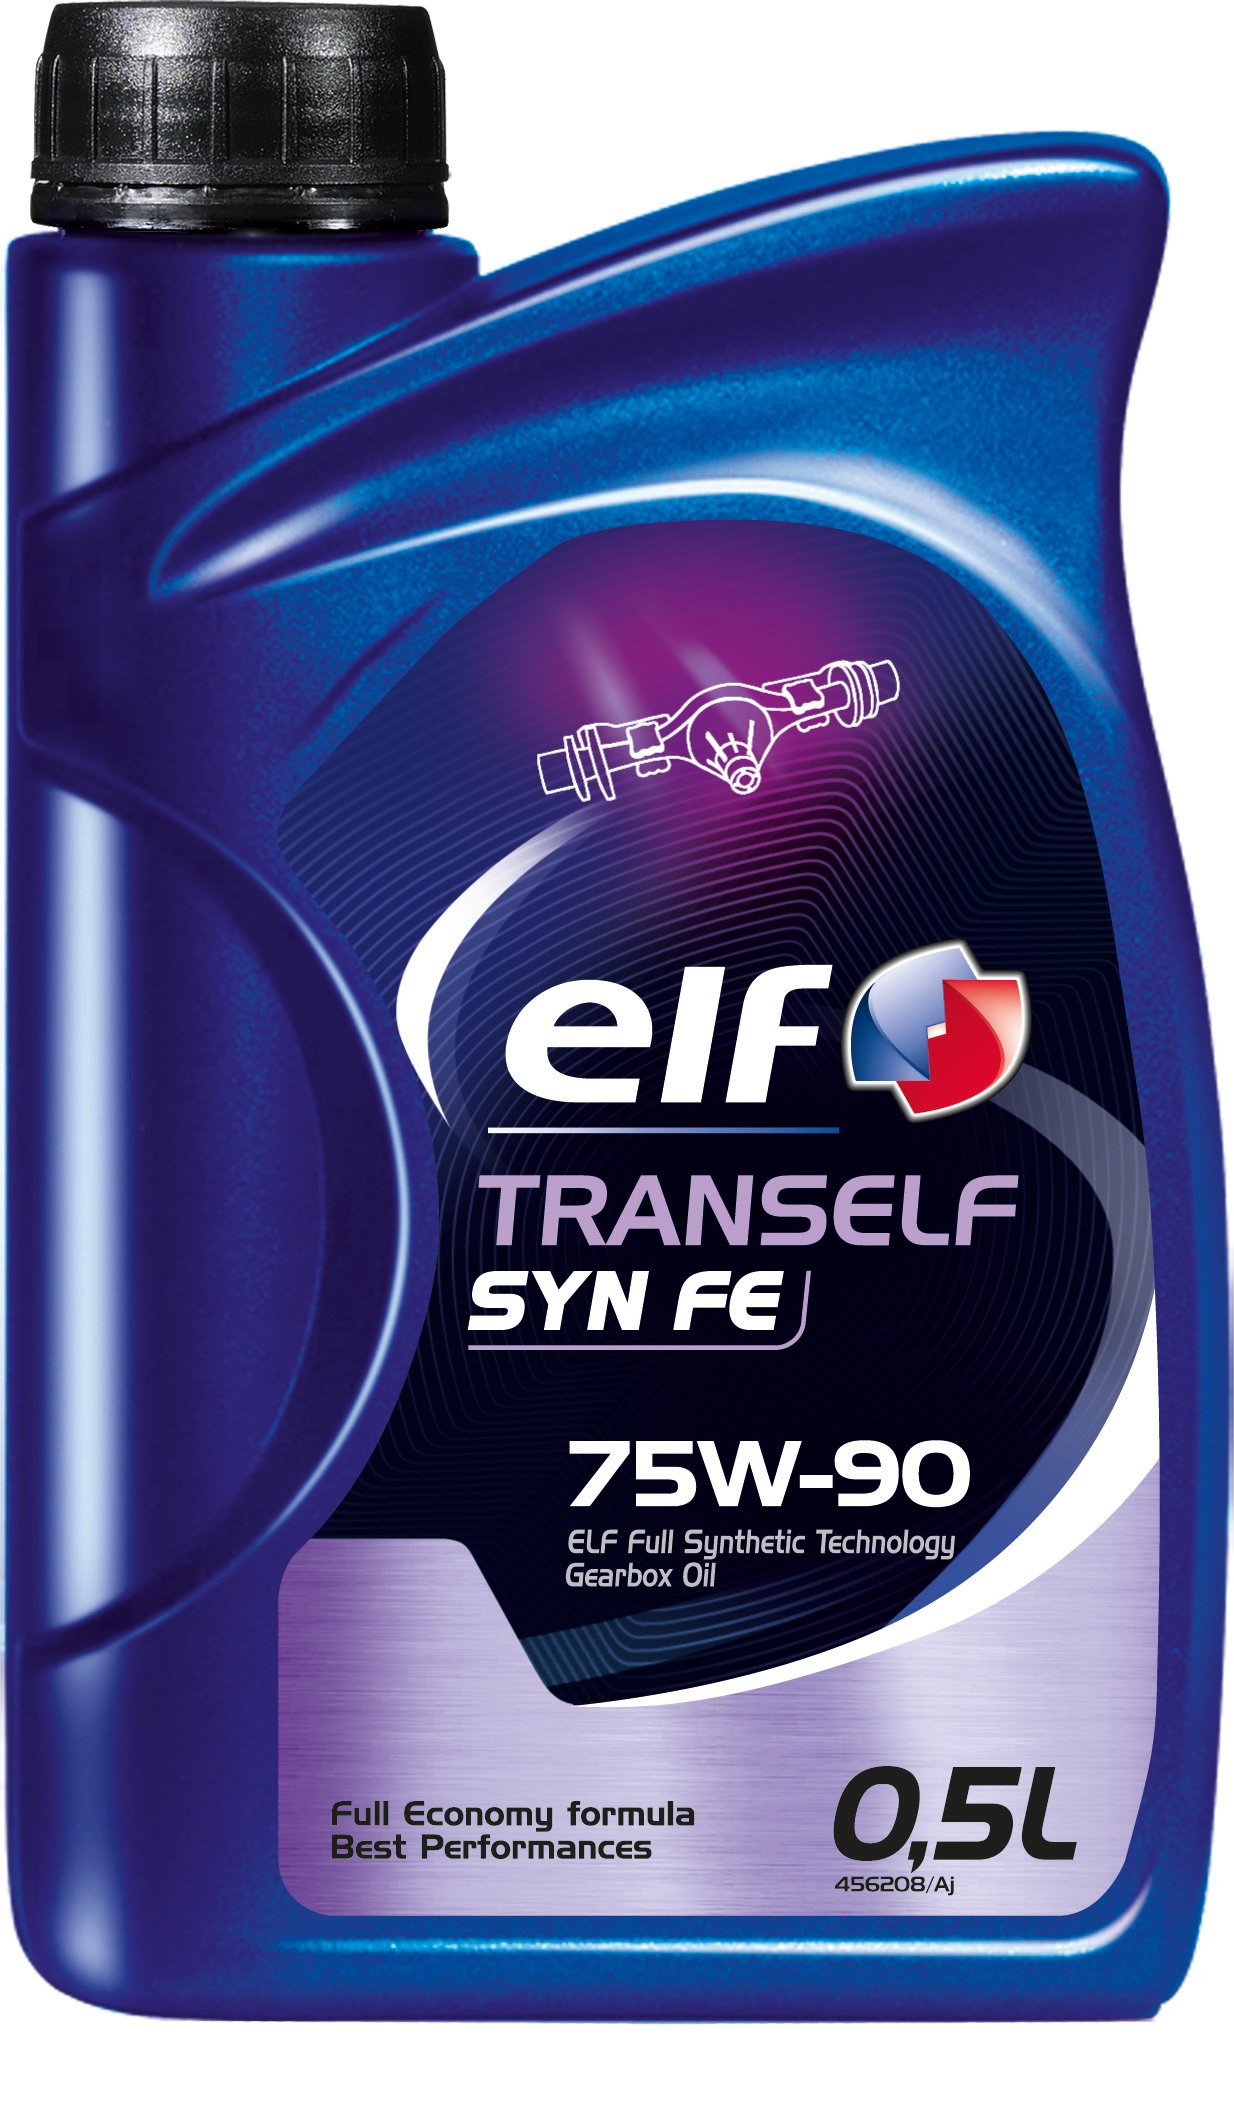 Elf – Trans Syn FE 75 W-90 500 ml von Elf